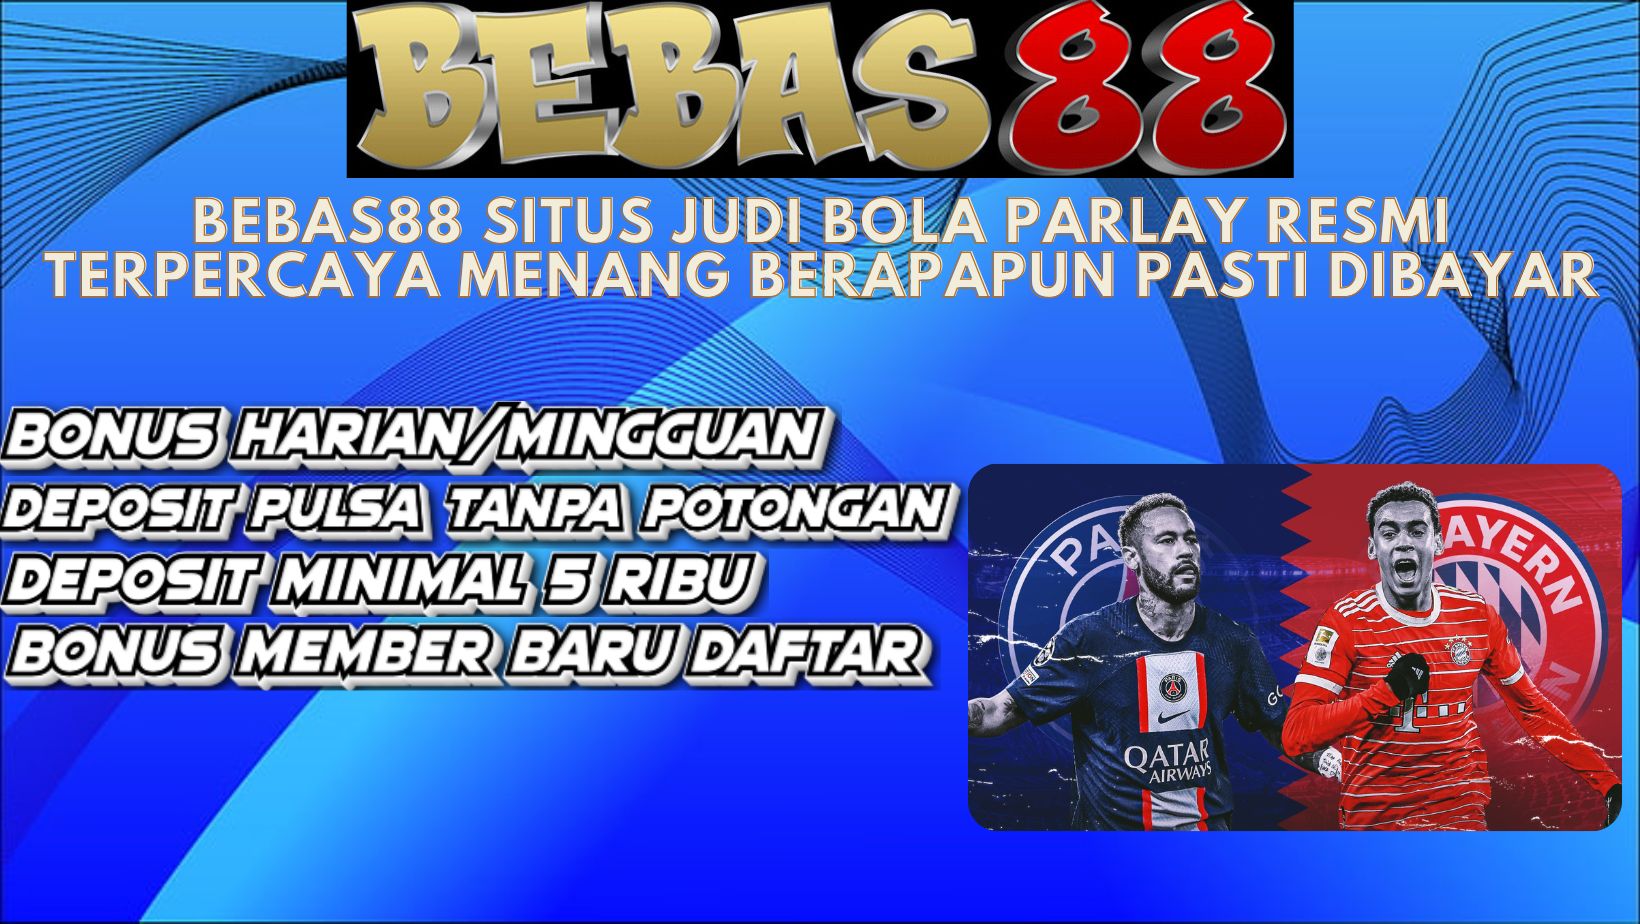 Bebas88 situs agen Permainan bola formal dan terpercaya di Indonesia. Bebas 88 menjadi keliru satu pilihan situs bandar bola